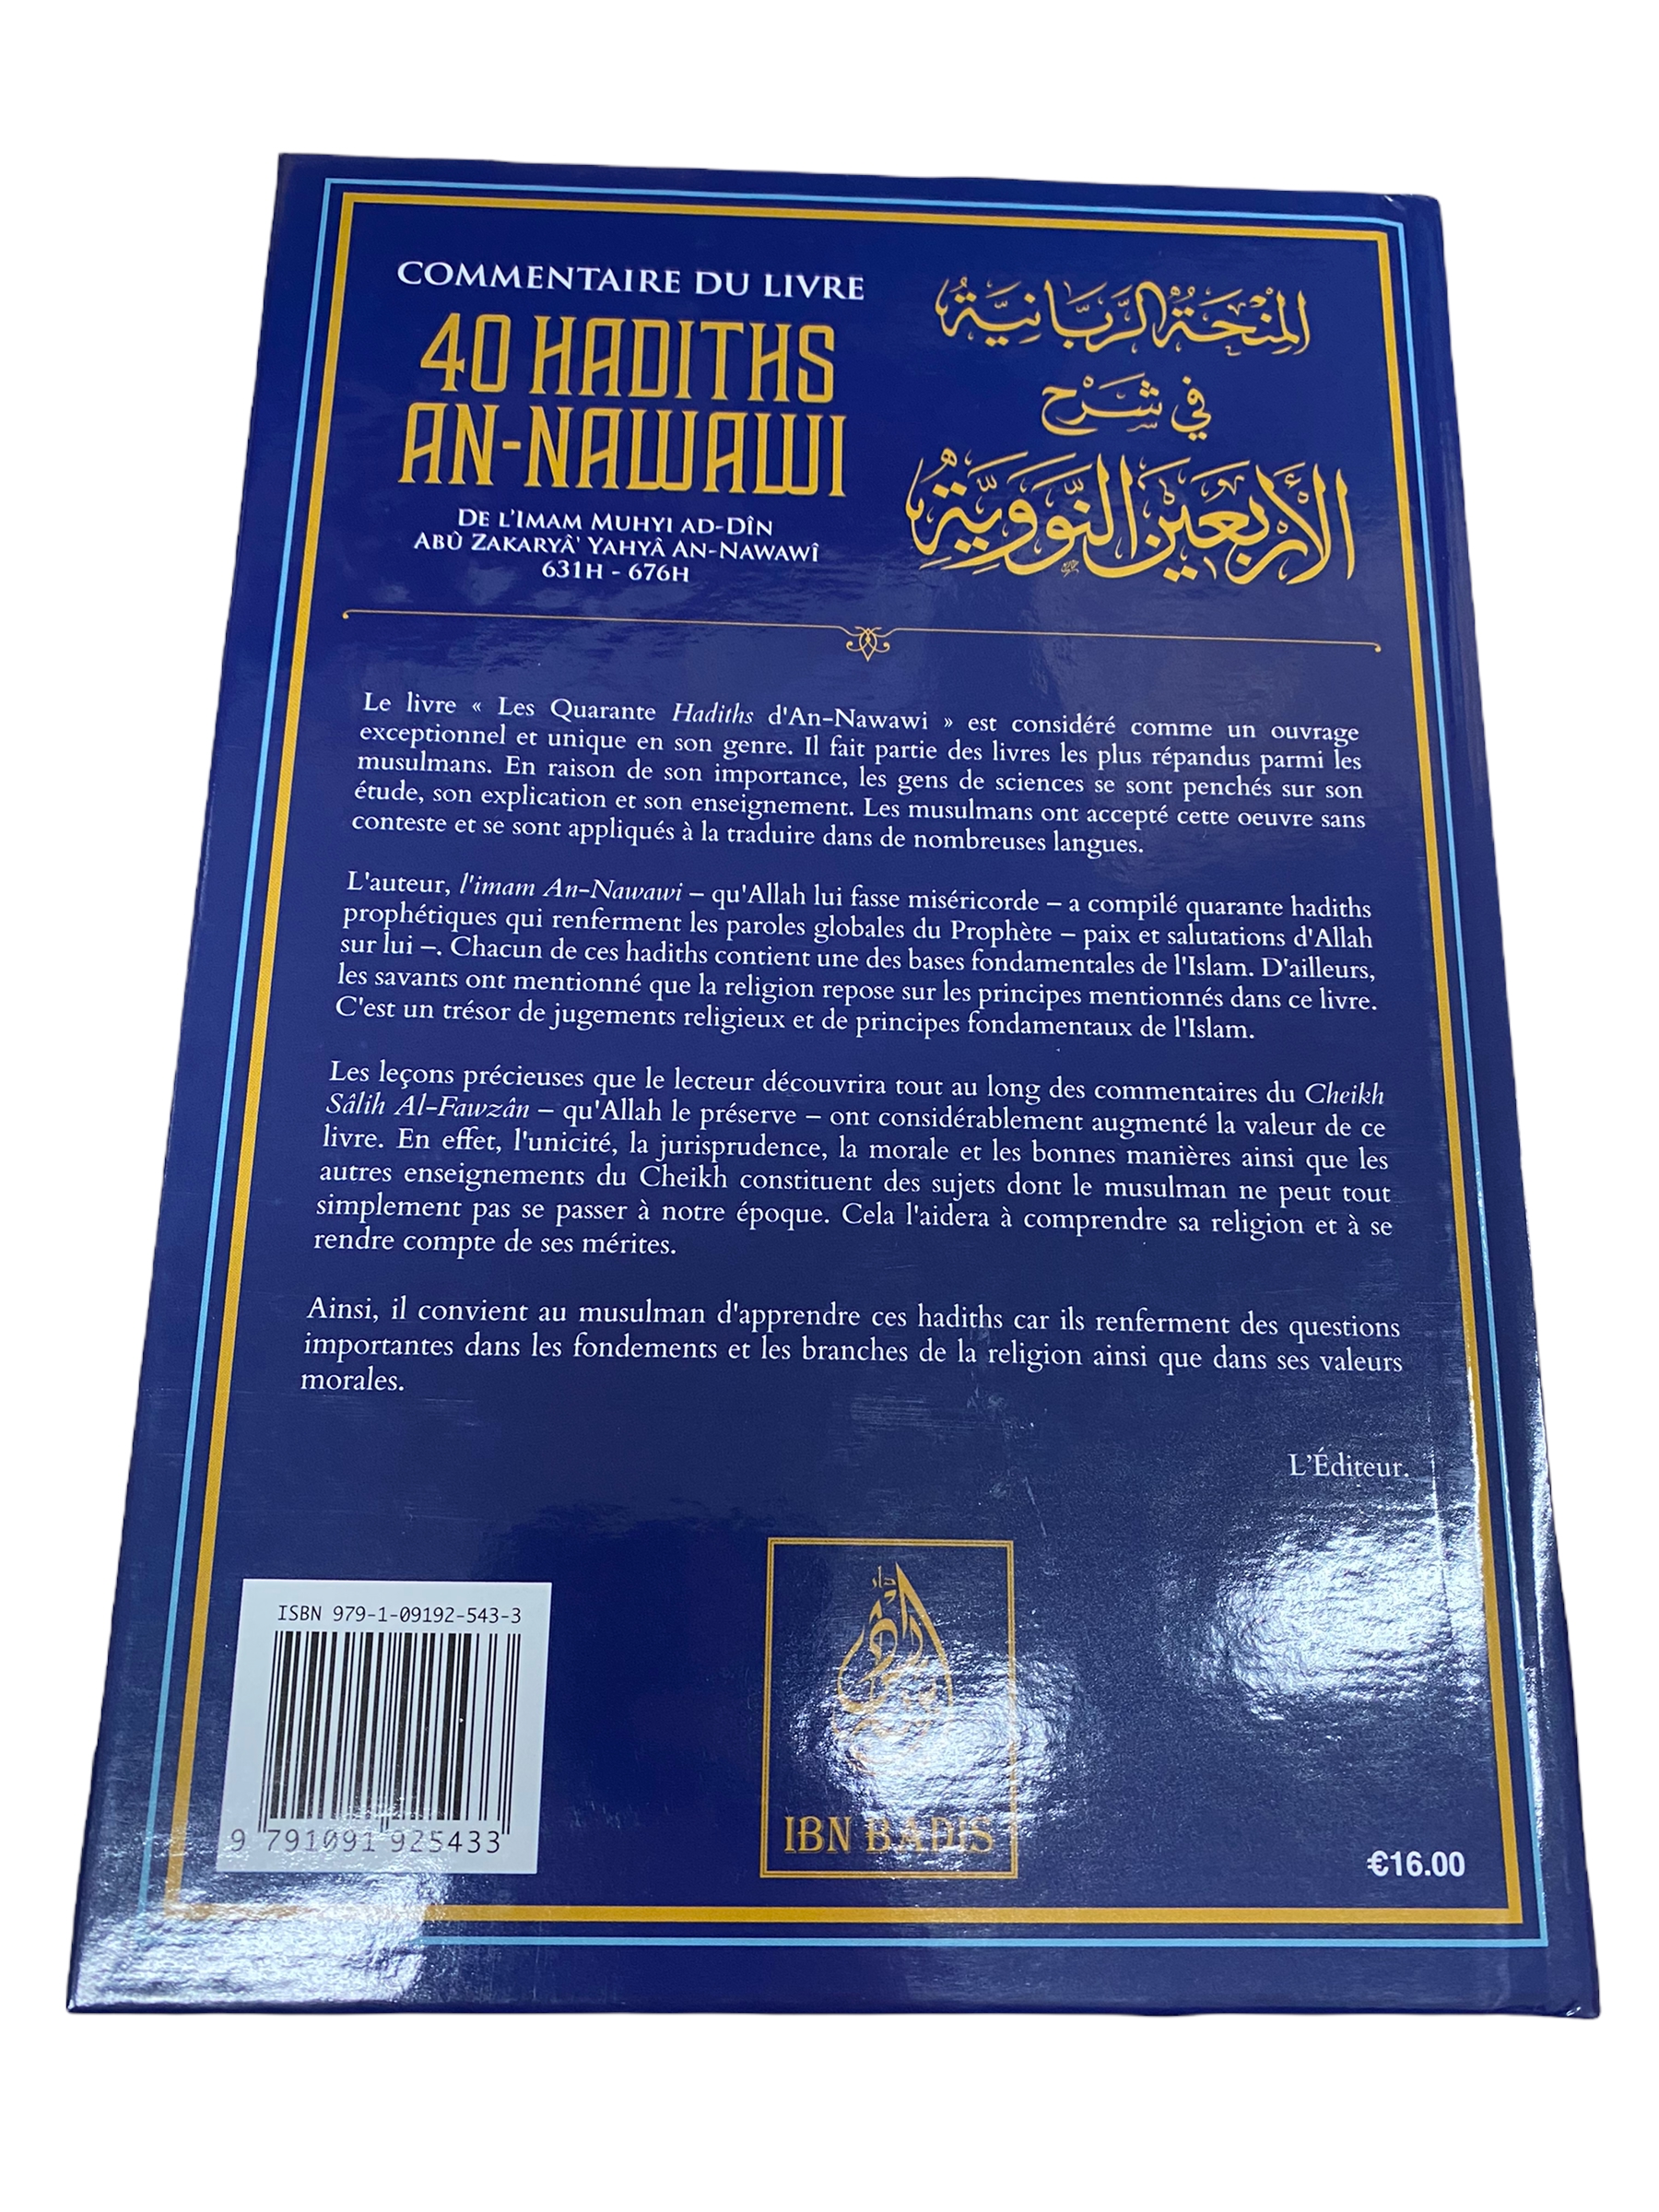 Commentaire du livre 40 Hadith An Nawawi Chacun de ces hadiths contient une des bases fondamentales de l’Islam. C’est un trésor historique